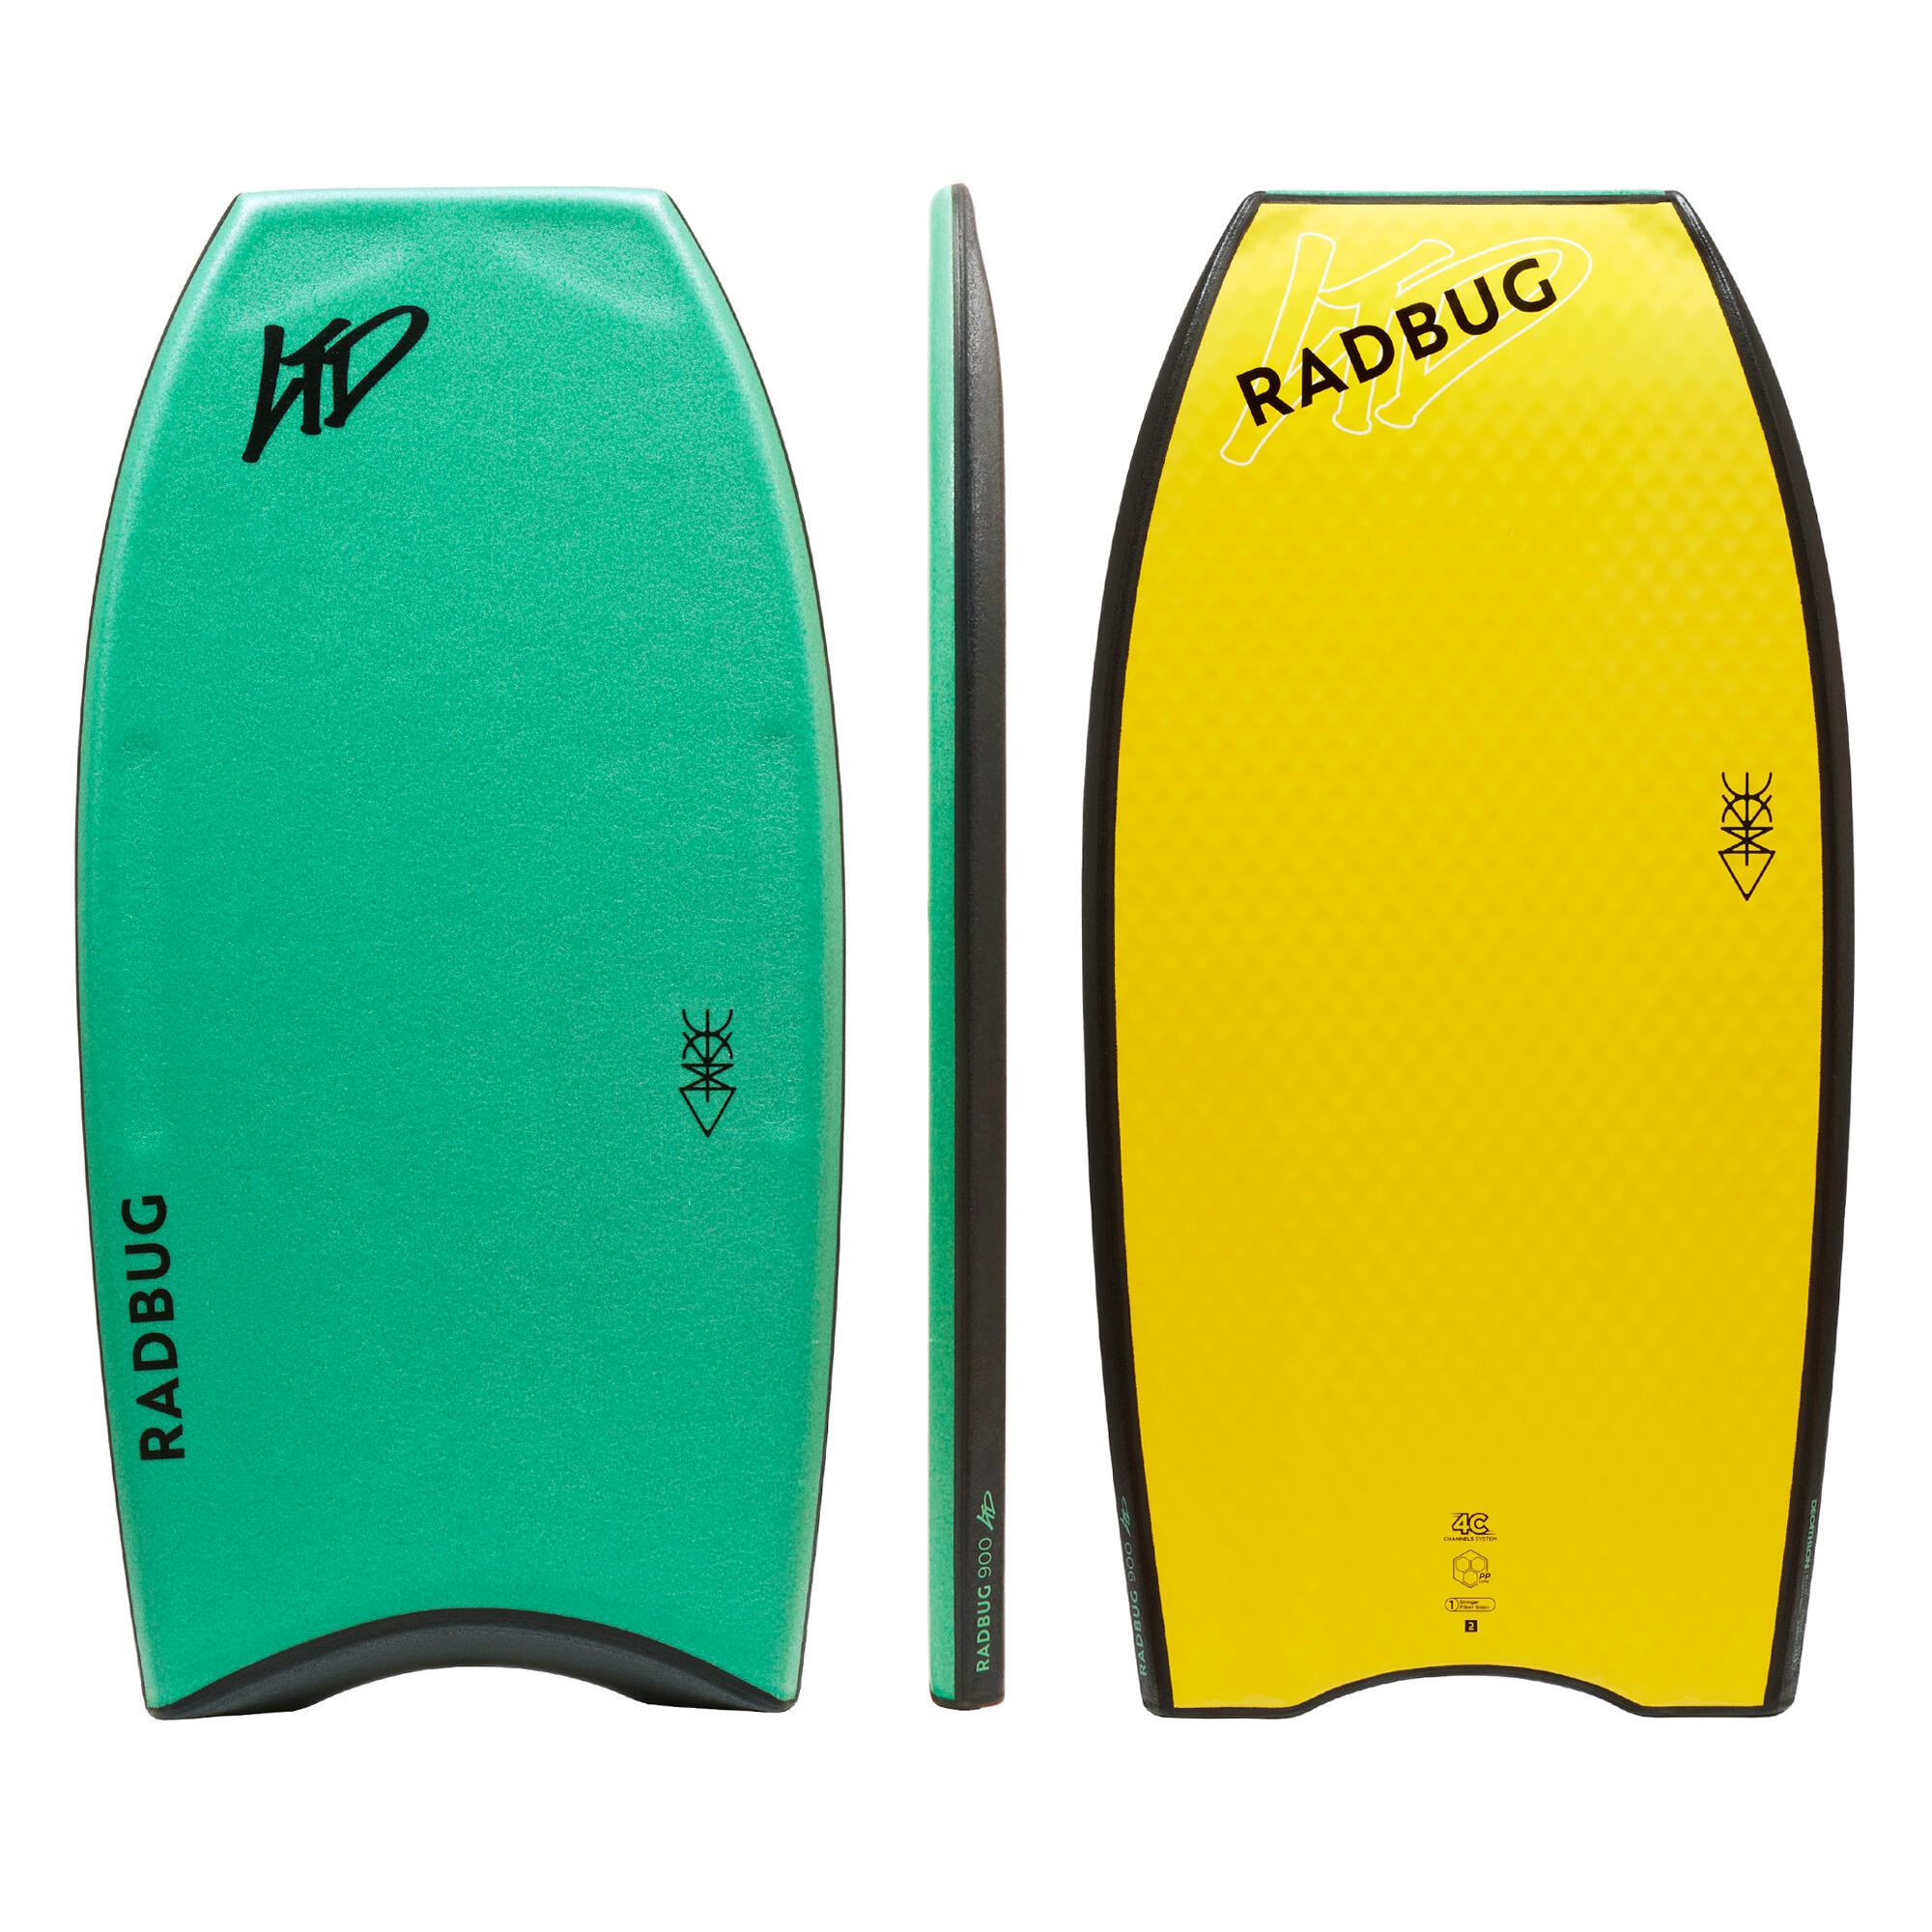 RADBUG Bodyboard 900 LTD grün/gelb – Pro Model Limited Edition 40